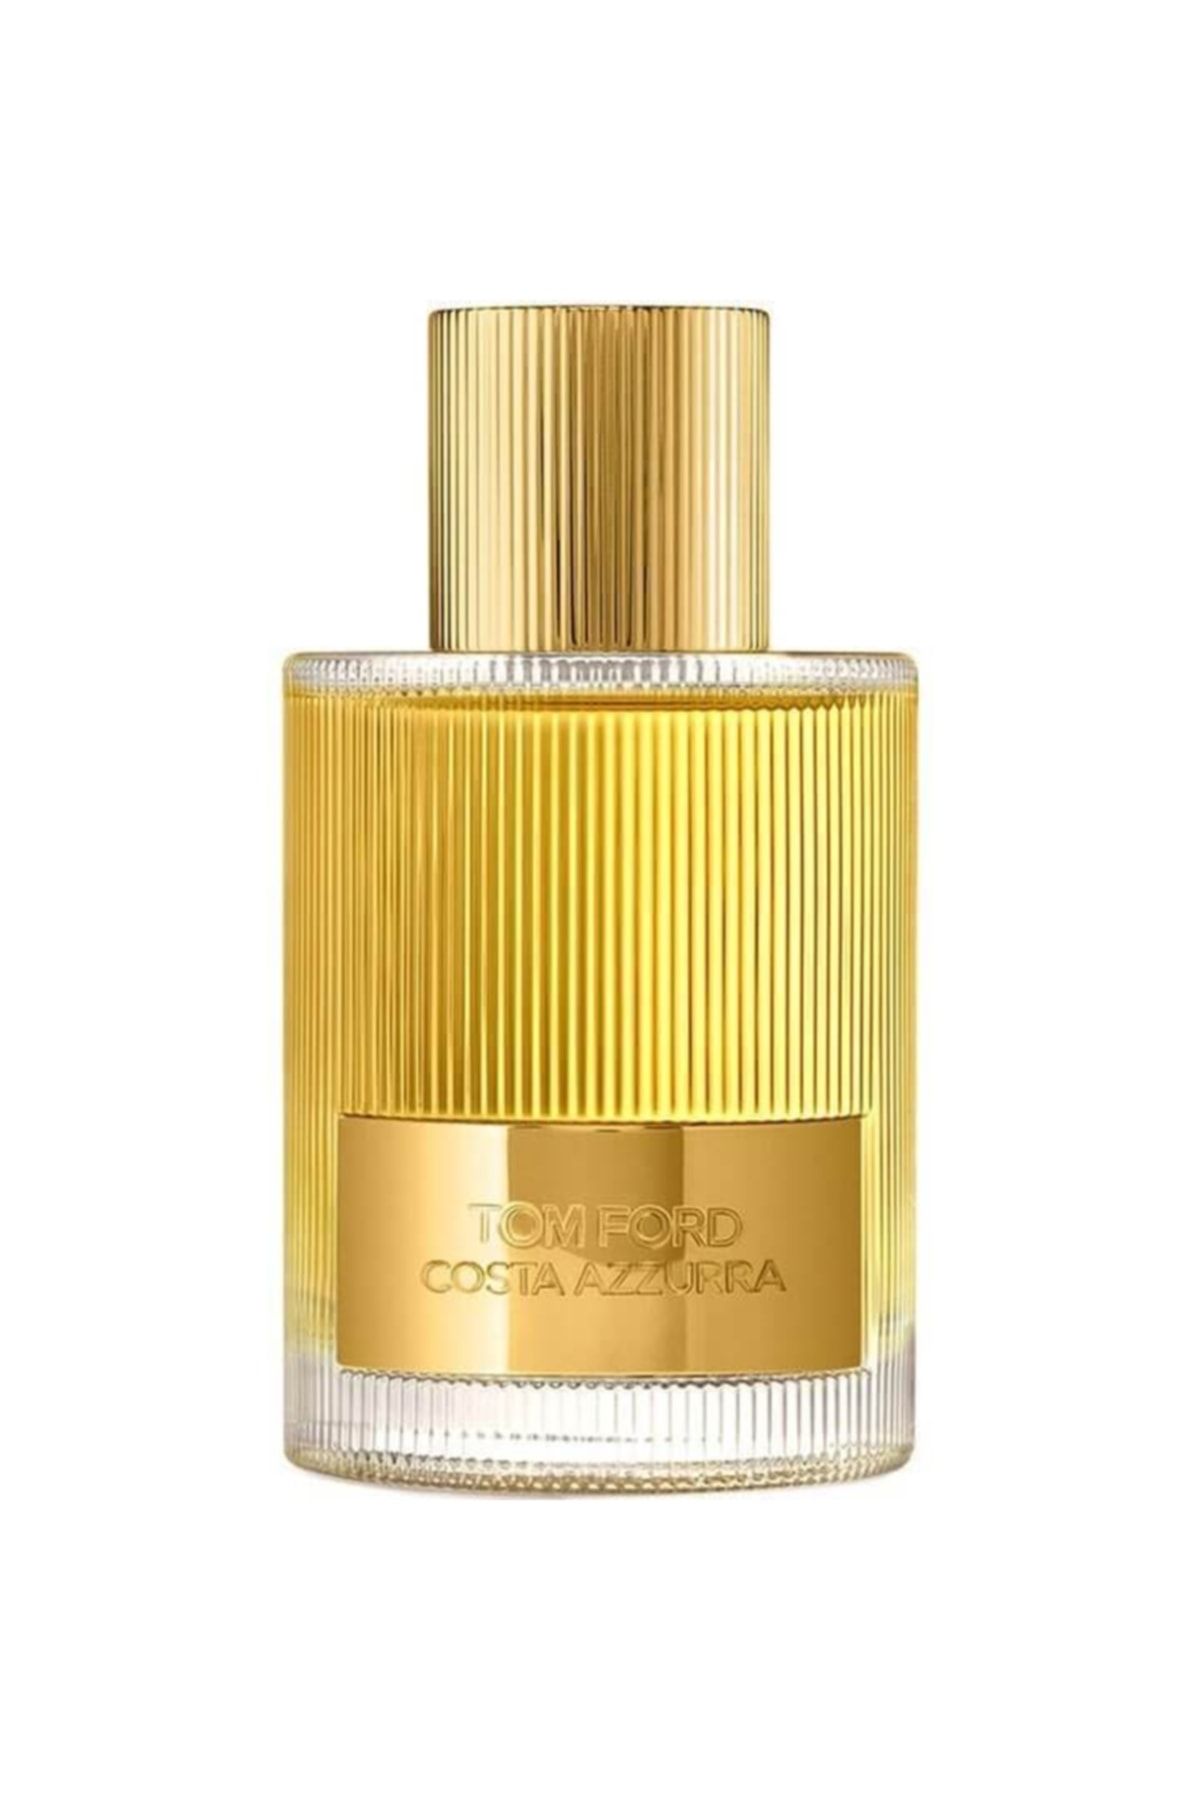 Tom Ford Costa Azzurra Edp 100 ml Unisex Parfum